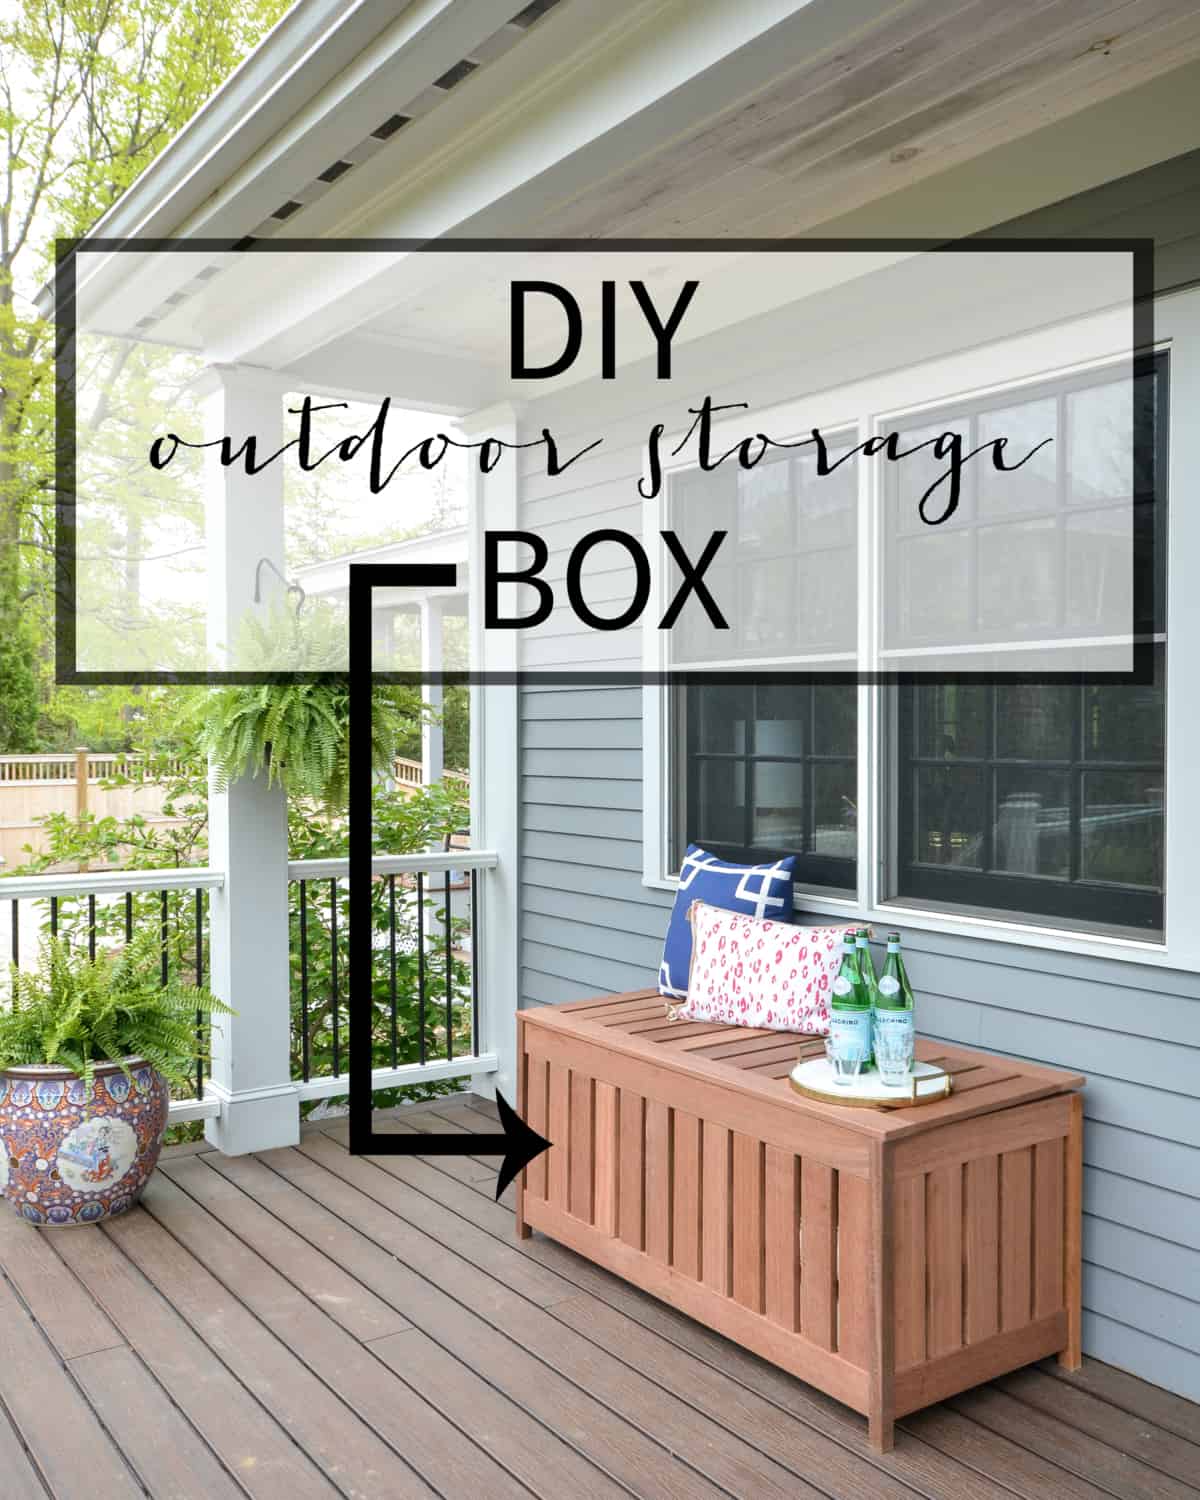 Diy outdoor storage box